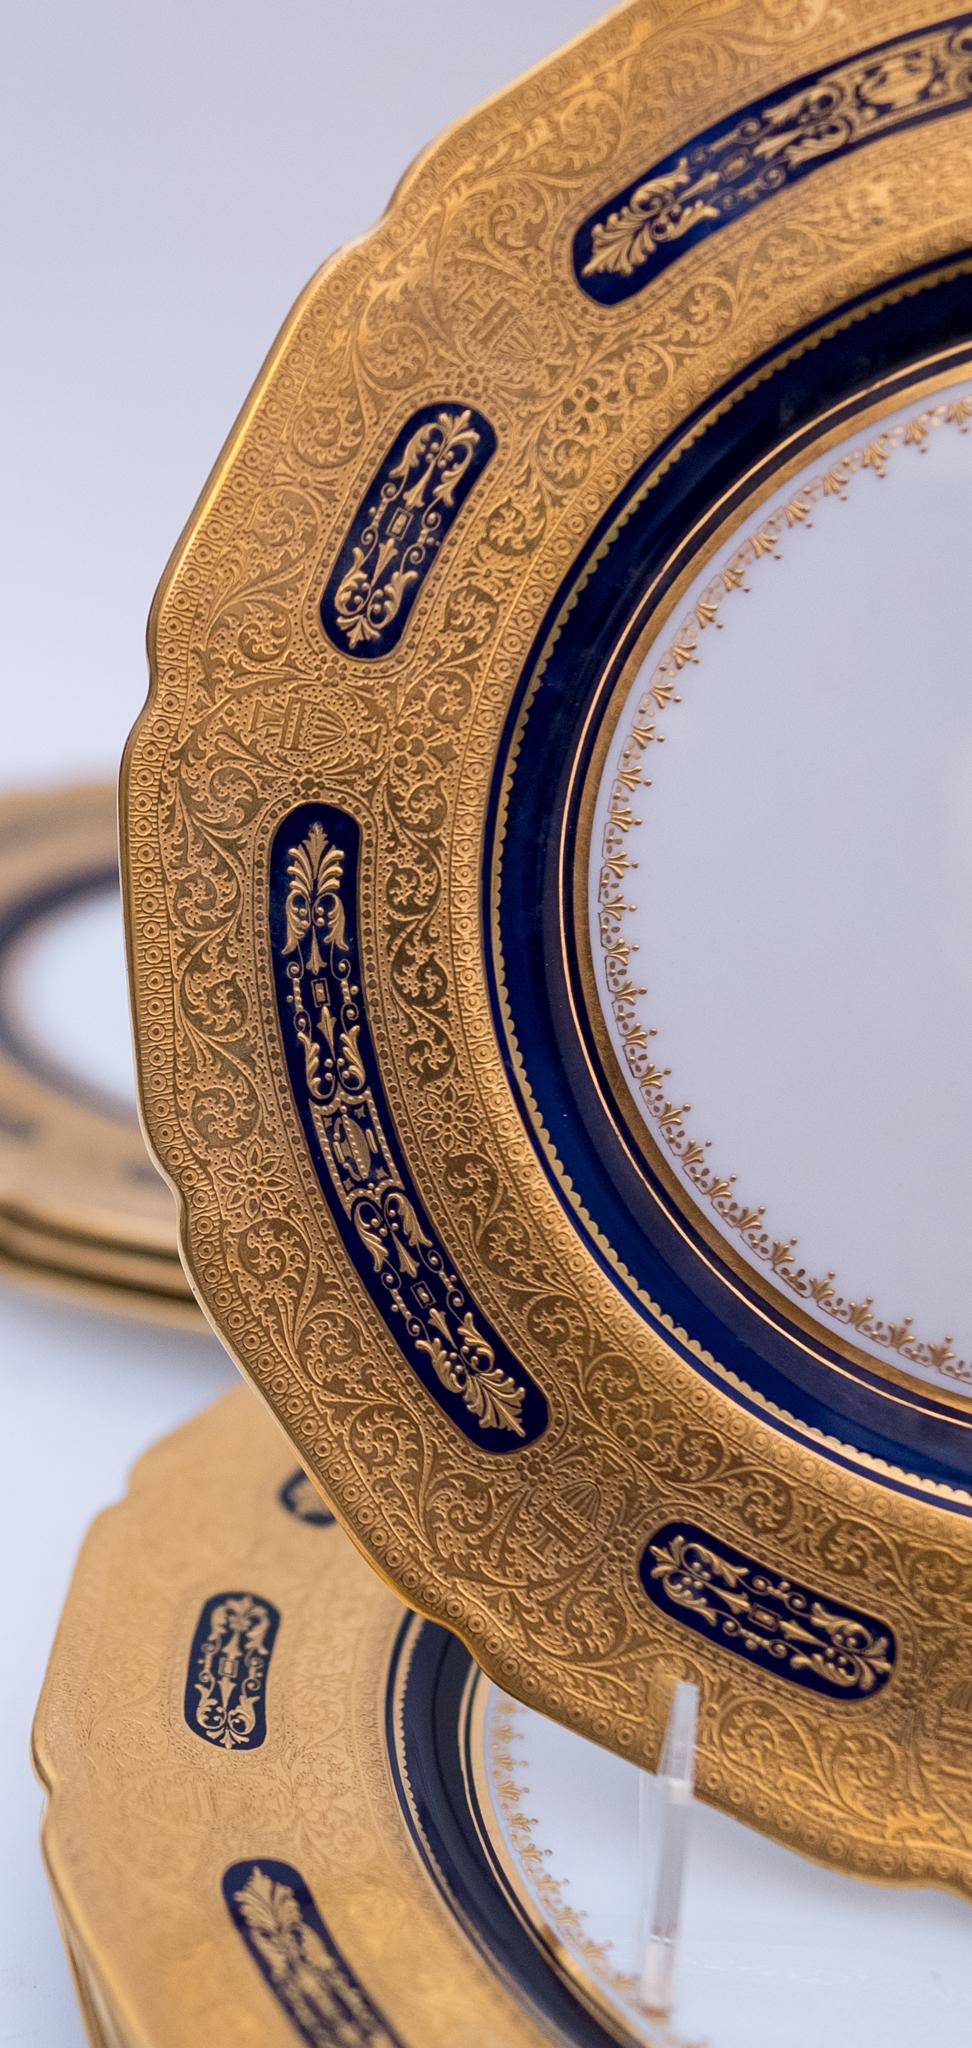 Gold Set of 10 Cobalt Blue & Gilt Encrusted Dinner Plates, Antique Custom Ordered